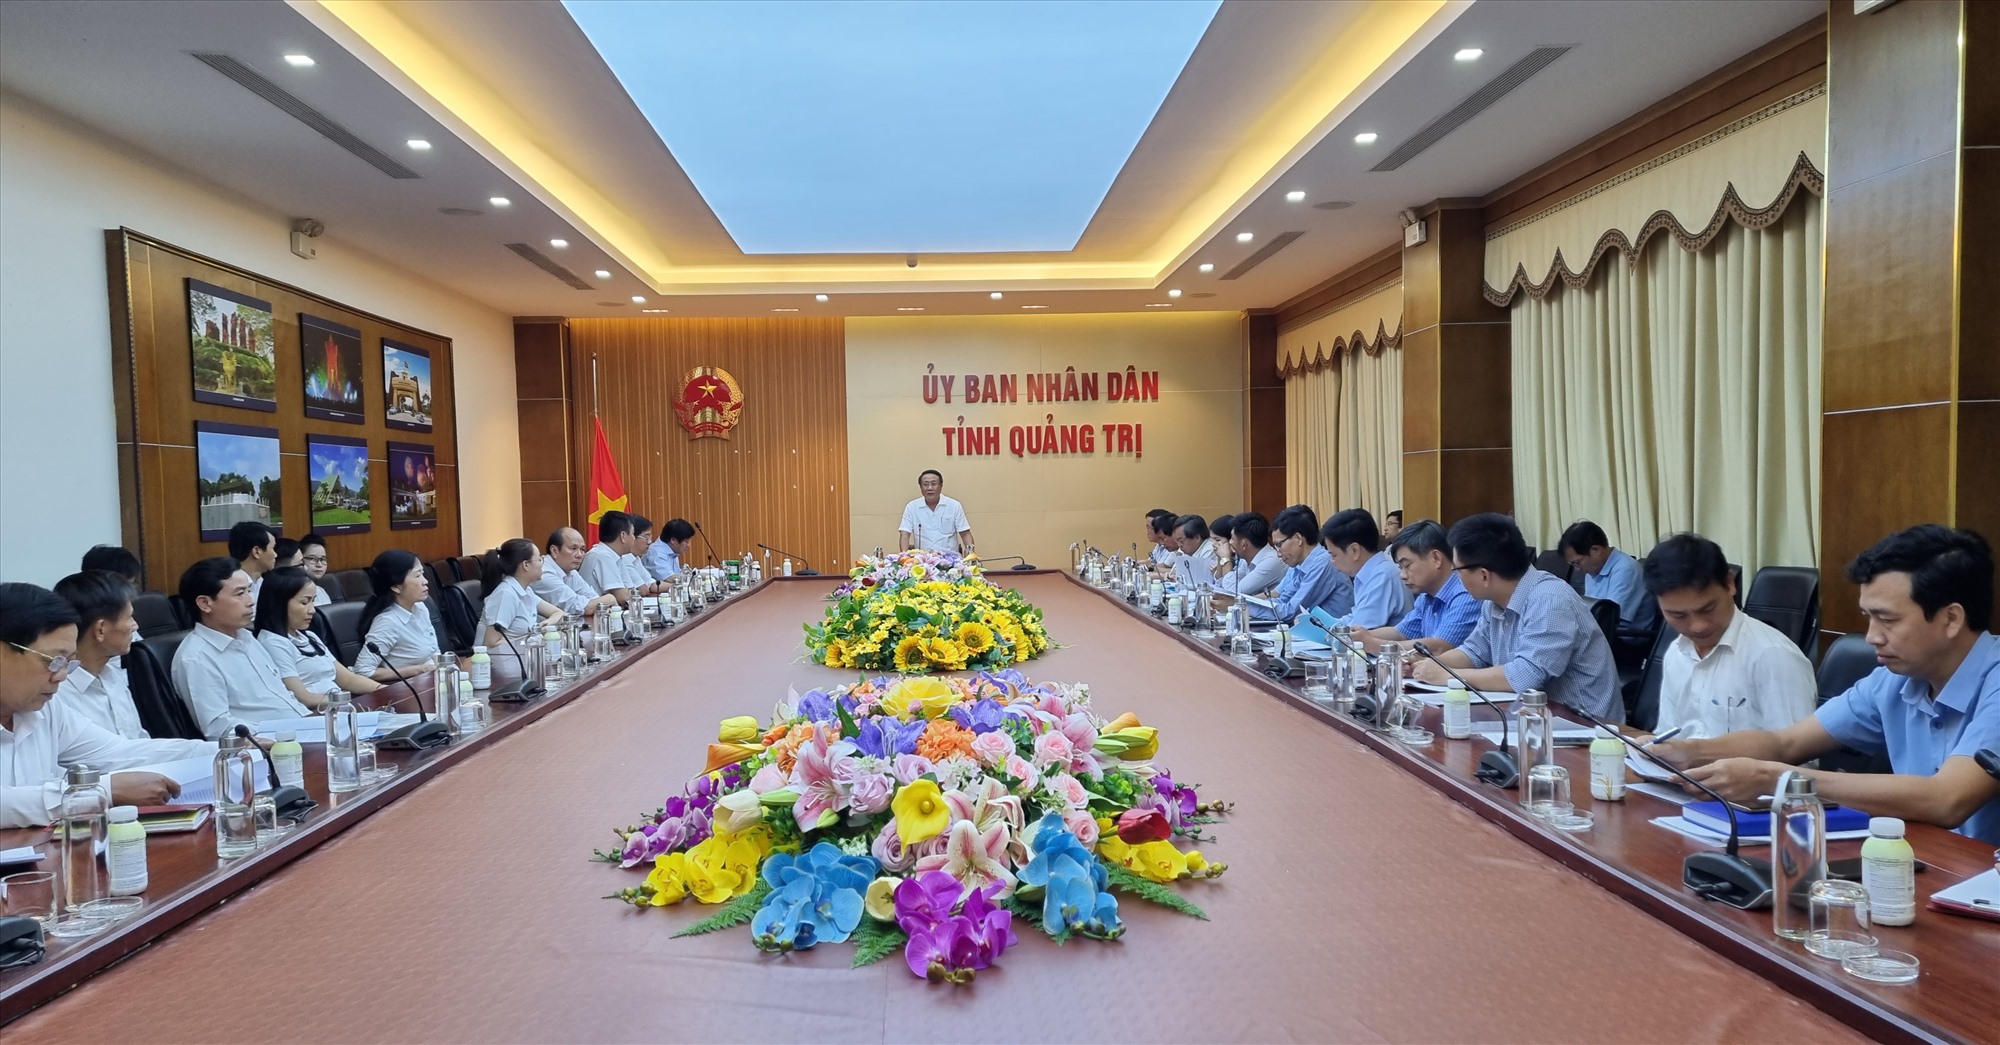 Phó Chủ tịch Thường trực UBND Tỉnh Hà Sỹ Đồng cho rằng Đề án sơ bộ phát triển lúa VietGAP, lúa hữu cơ Quảng Trị có sức thuyết phục ca